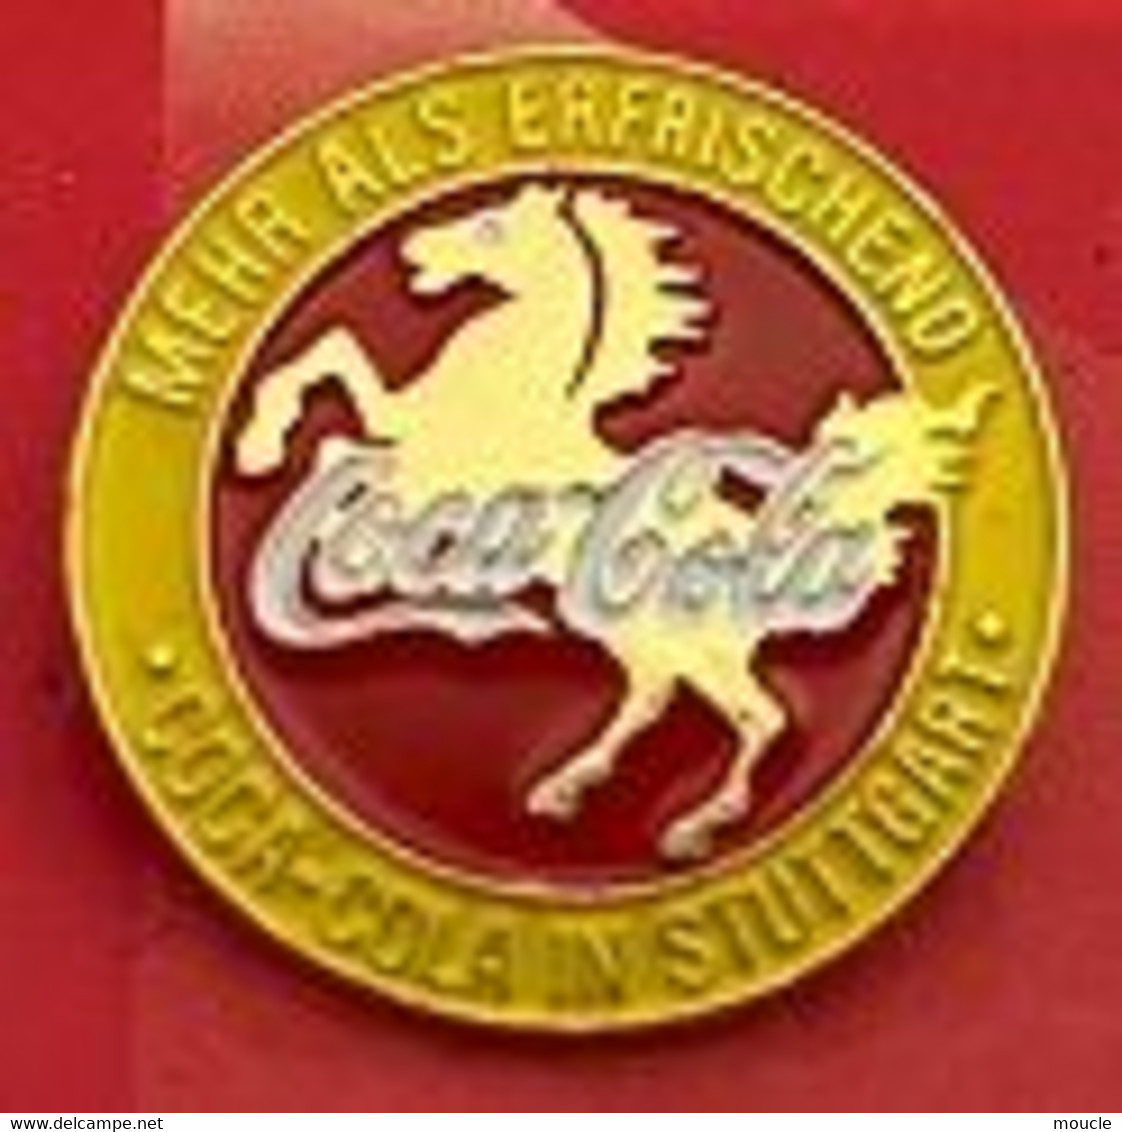 COCA COLA IN STUTTGART MEHR ALS ERFRISCHEND - CHEVAL - HORSE - PFERDE - ALLEMAGNE - DEUTSCHLAND - COCA  -    (31) - Coca-Cola